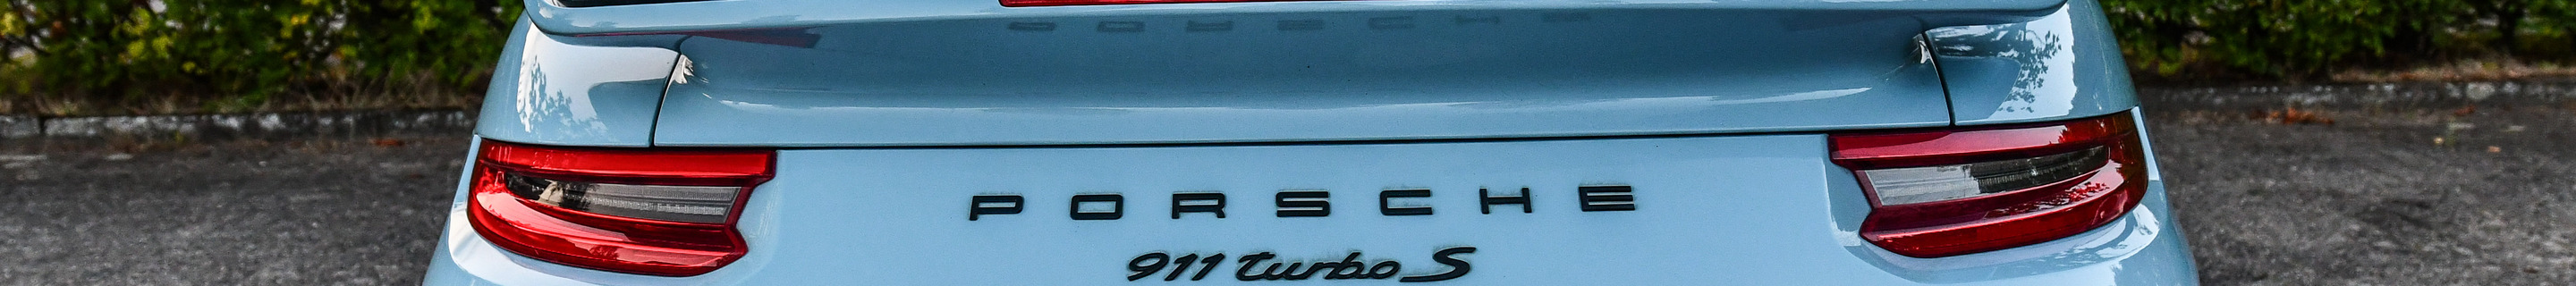 Porsche 991 Turbo S Cabriolet MkII